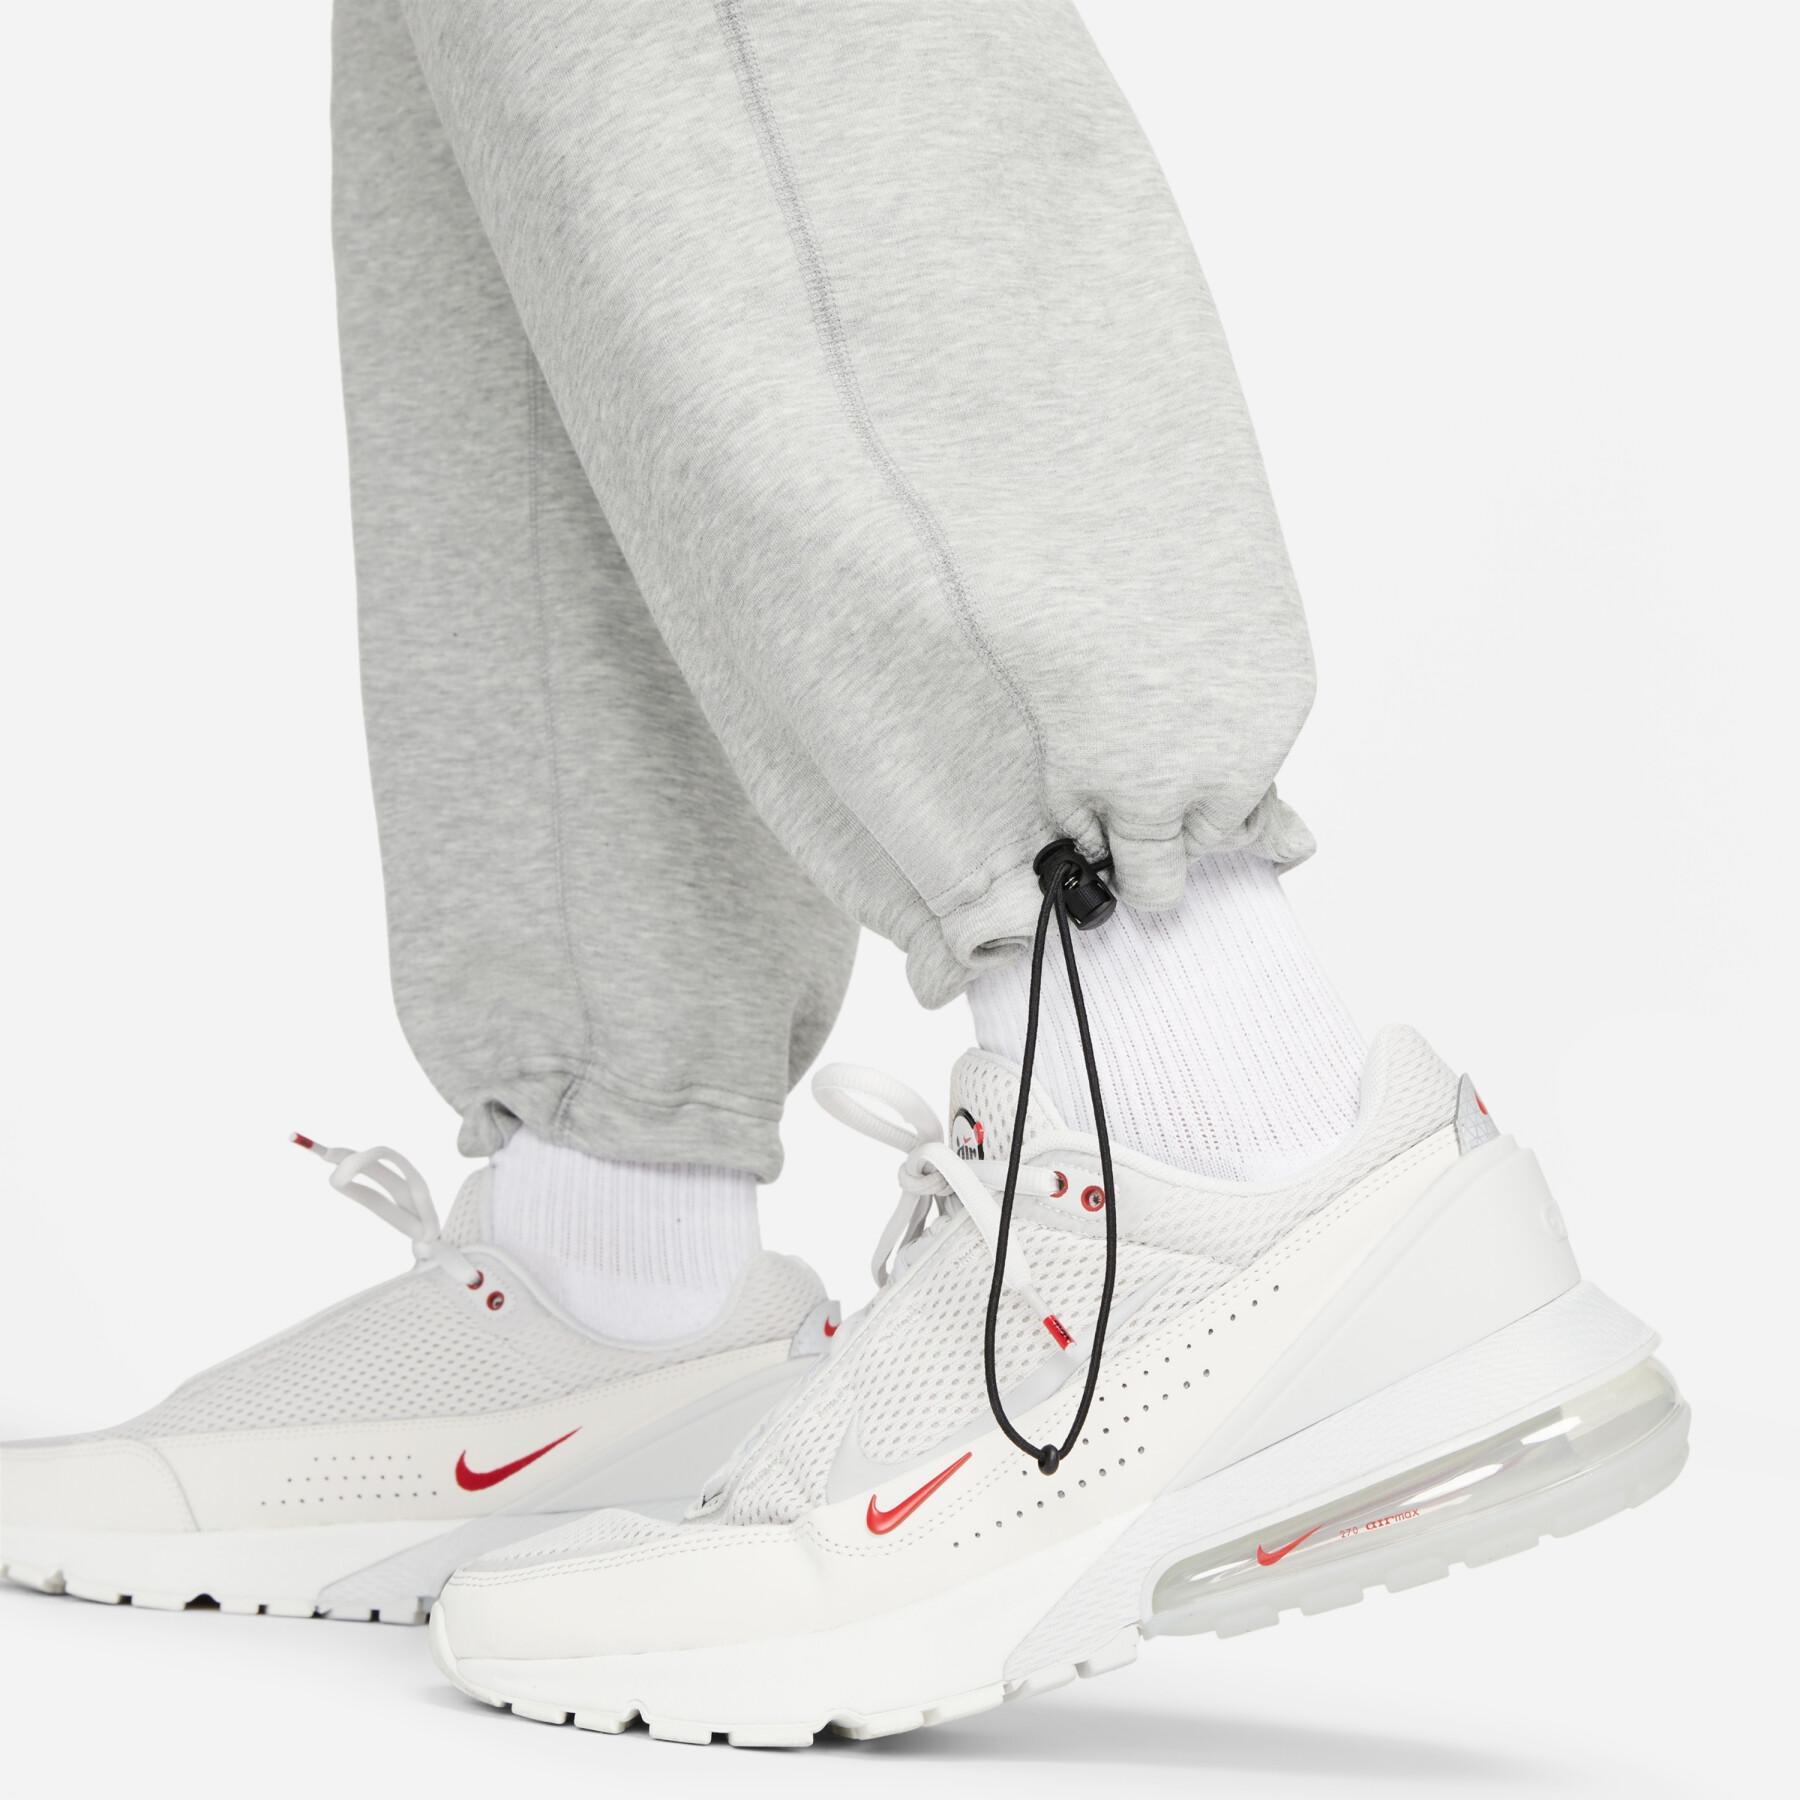 Sweatbroek met open zoom Nike Tech Fleece